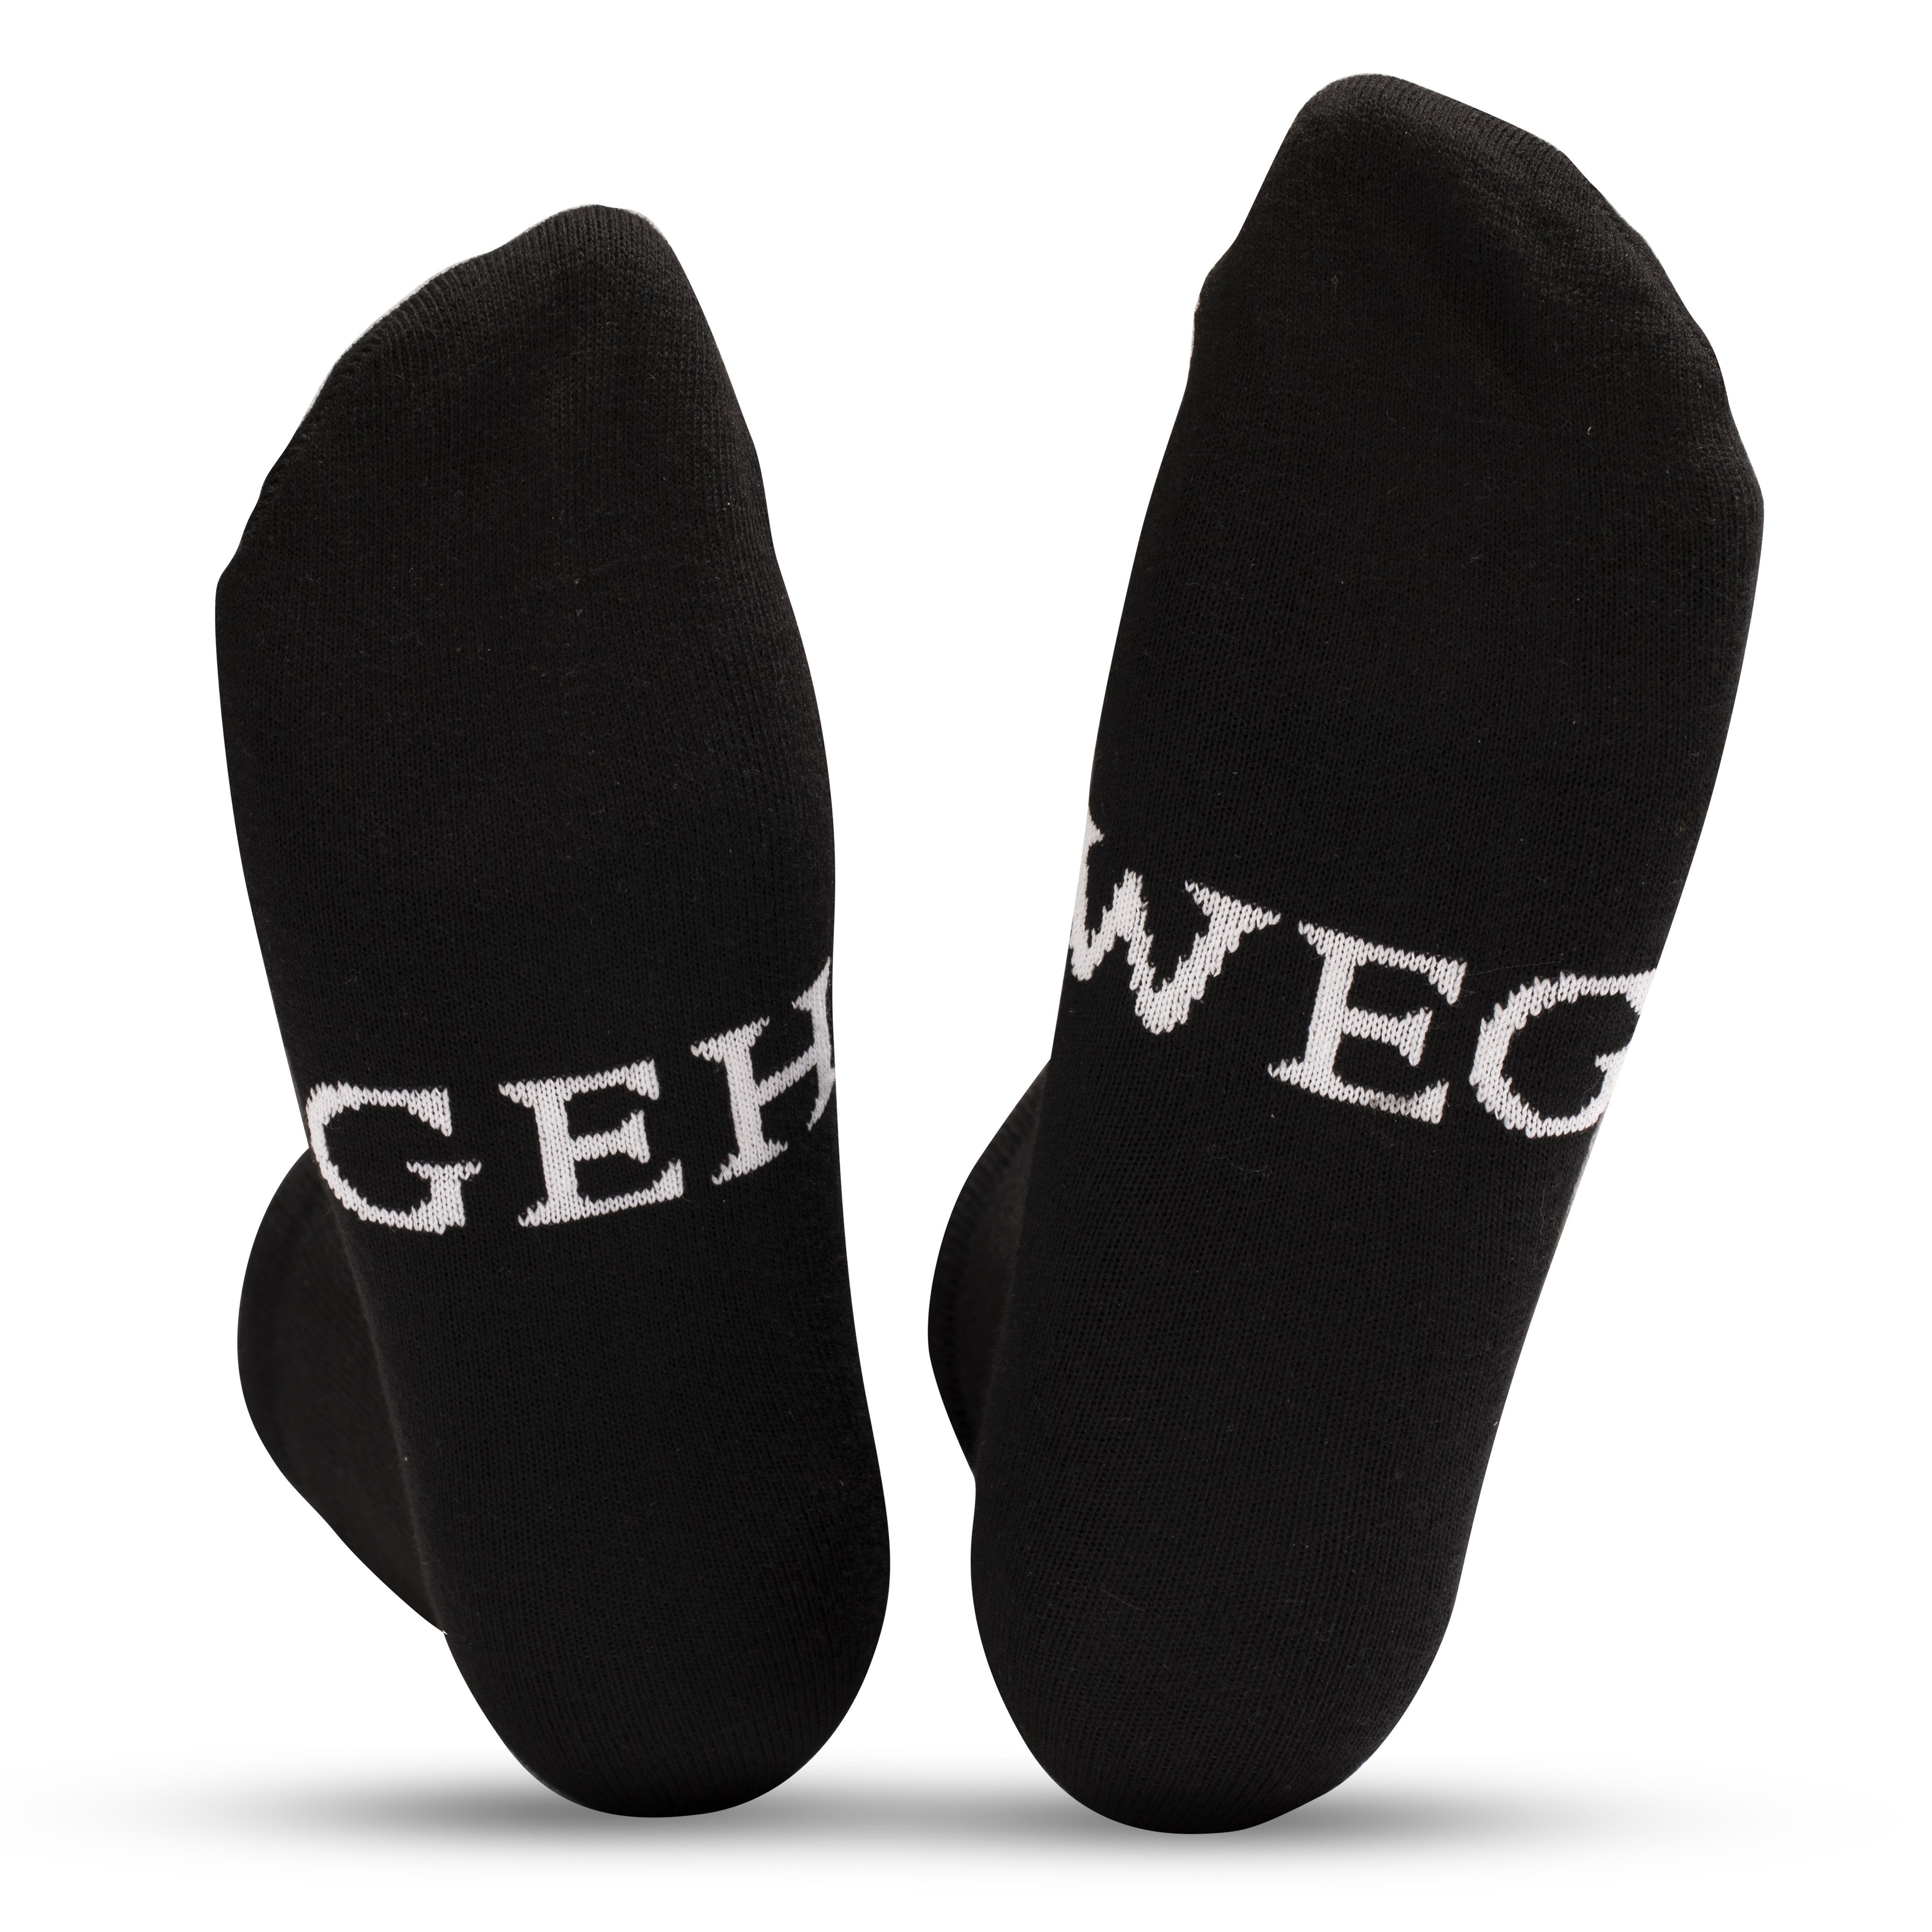 Stinkstiefel Socken Lustige Socken (1-Paar) mit Spruch ‚GEH WEG‘ - Einheitsgröße